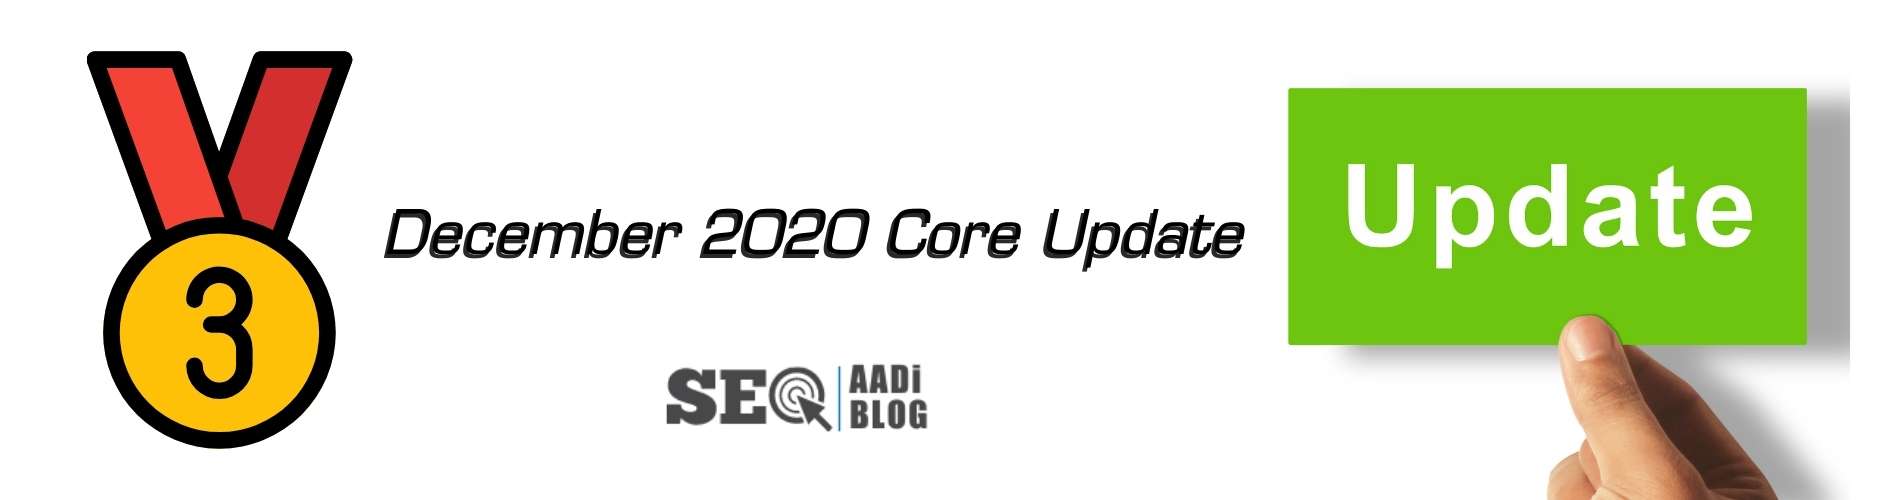 3rd December 2020 core update